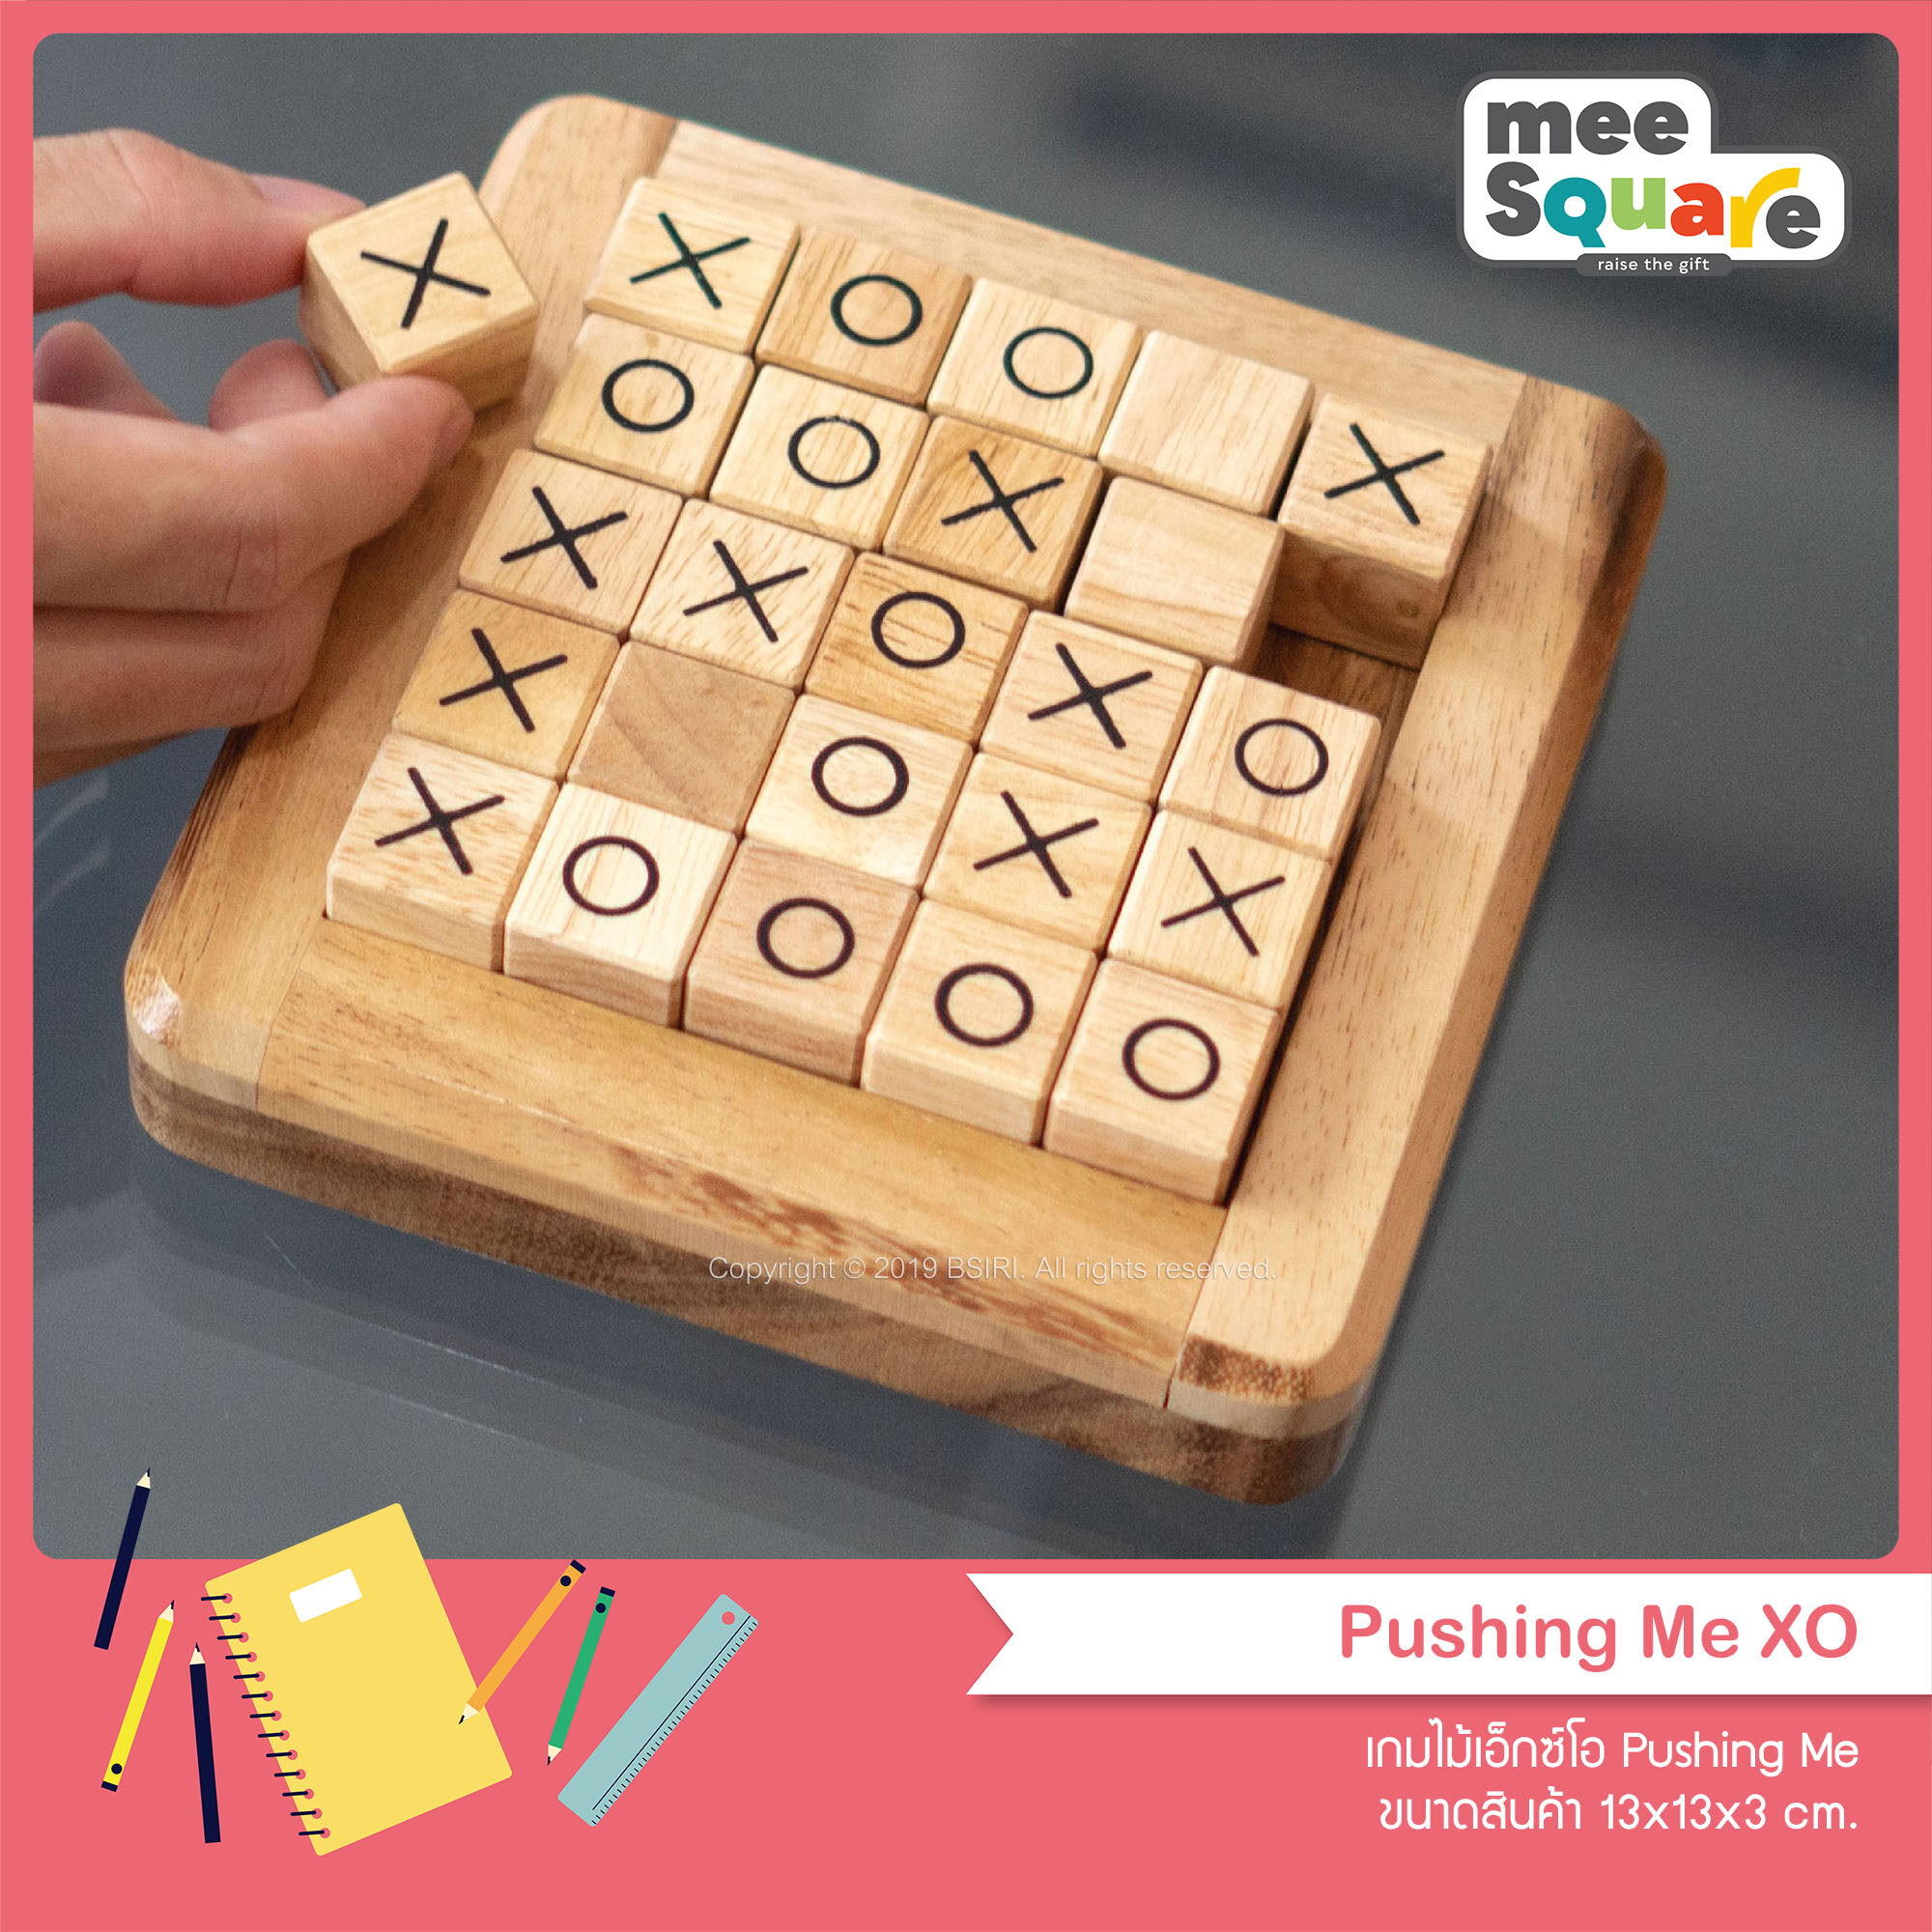 เกมไม้ เกมกระดาน การเรียนรู้ เอ็กซ์โอ Pushing Me (5x5 ช่อง) BSIRI เกมส์ไม้บริหารสมอง เกมส์ฝึกทักษะวางกลยุทธ์ เกมกระดานถูกๆ Wooden Board Game